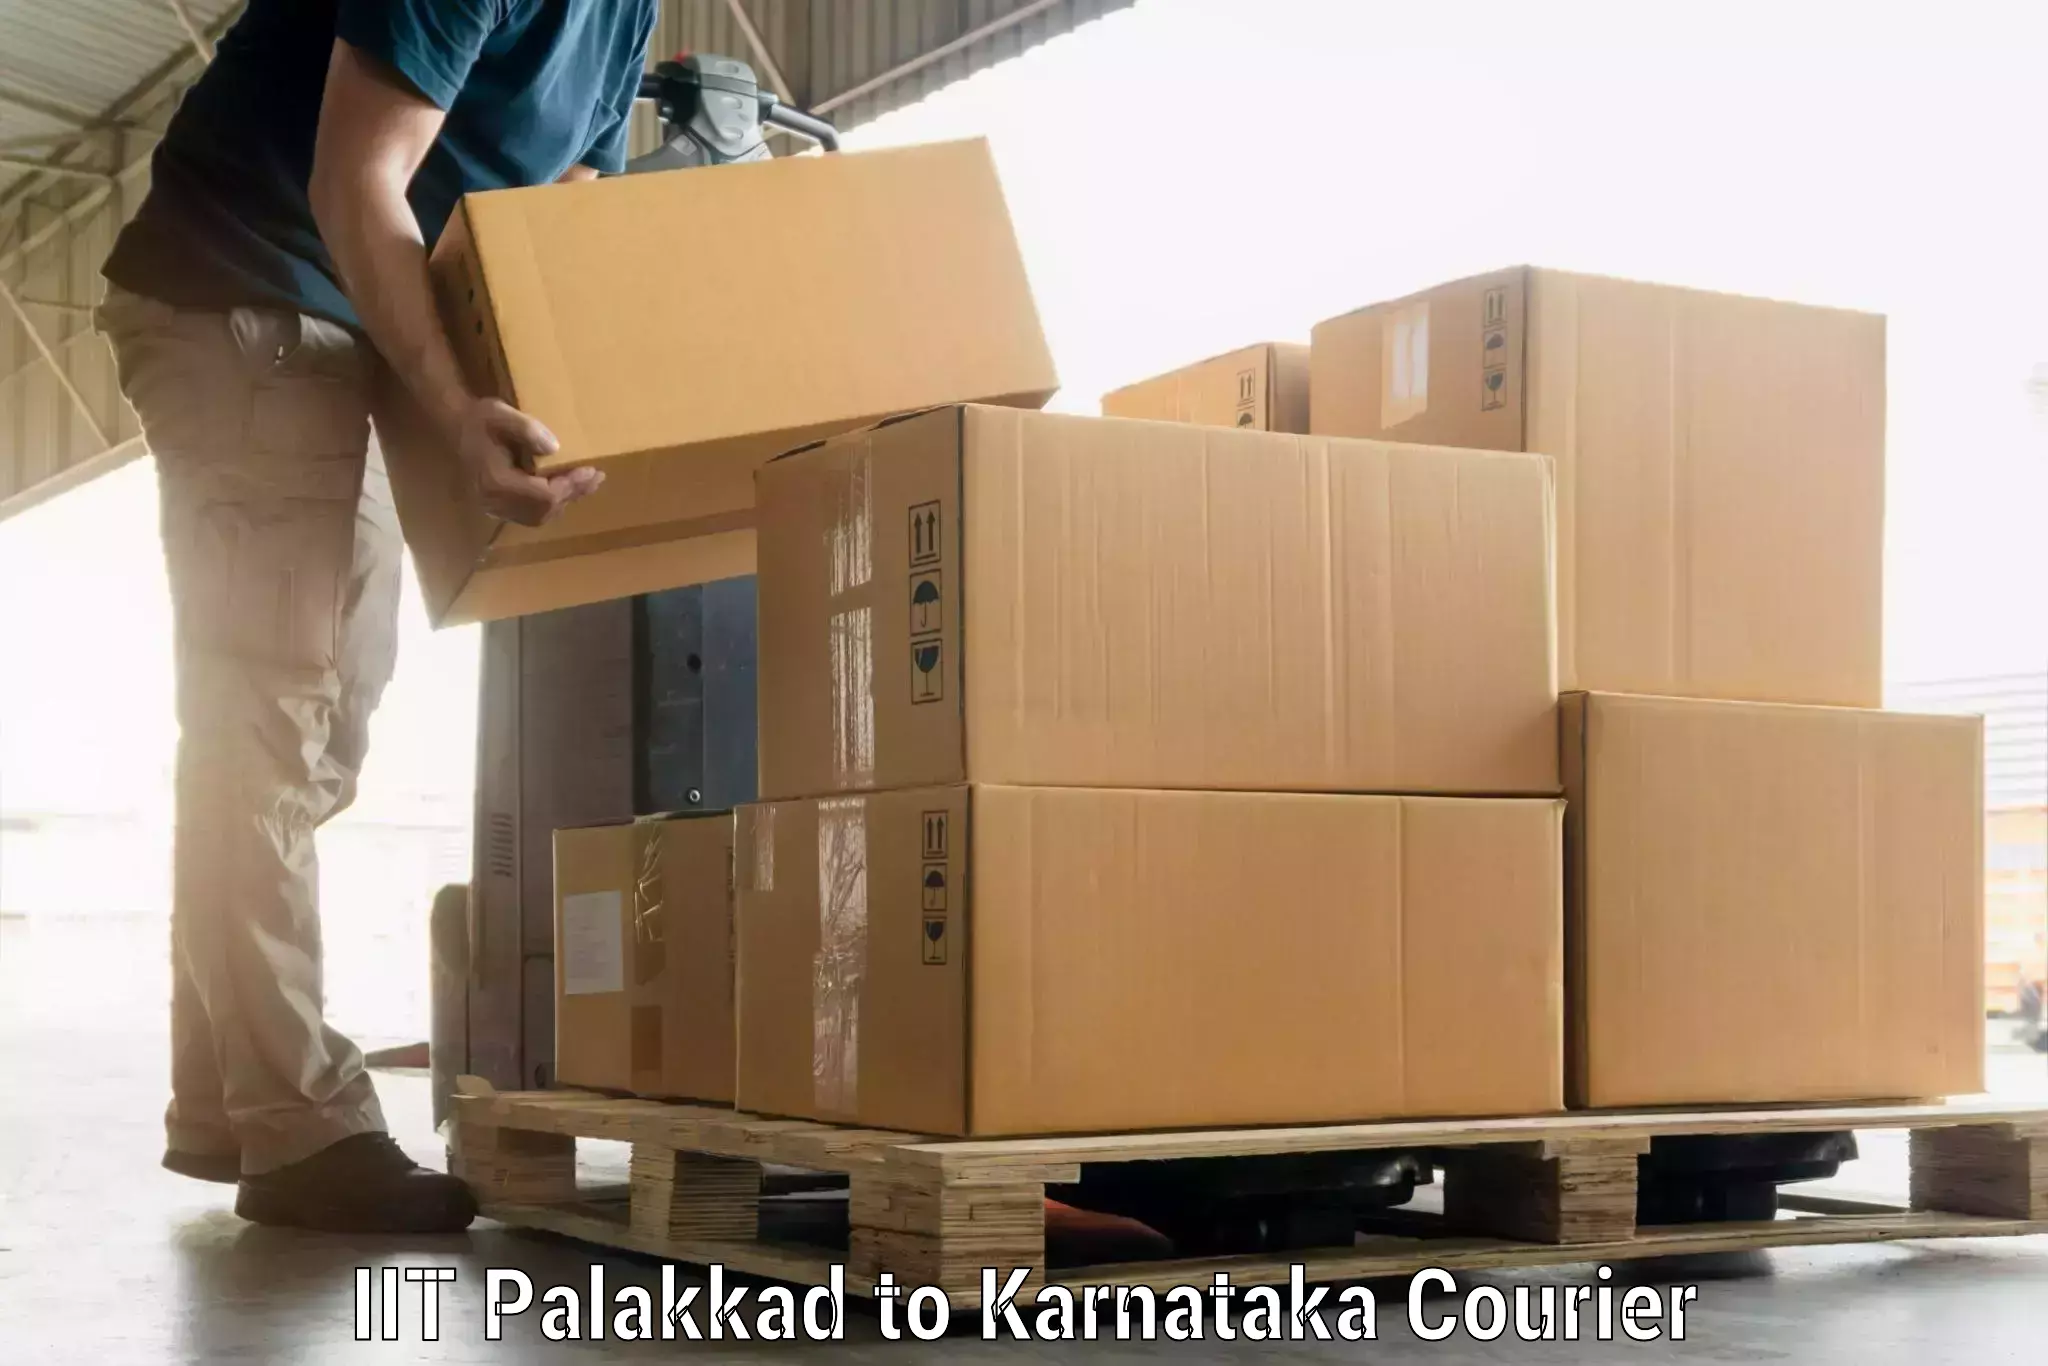 Luggage shipping specialists IIT Palakkad to Kalaburagi